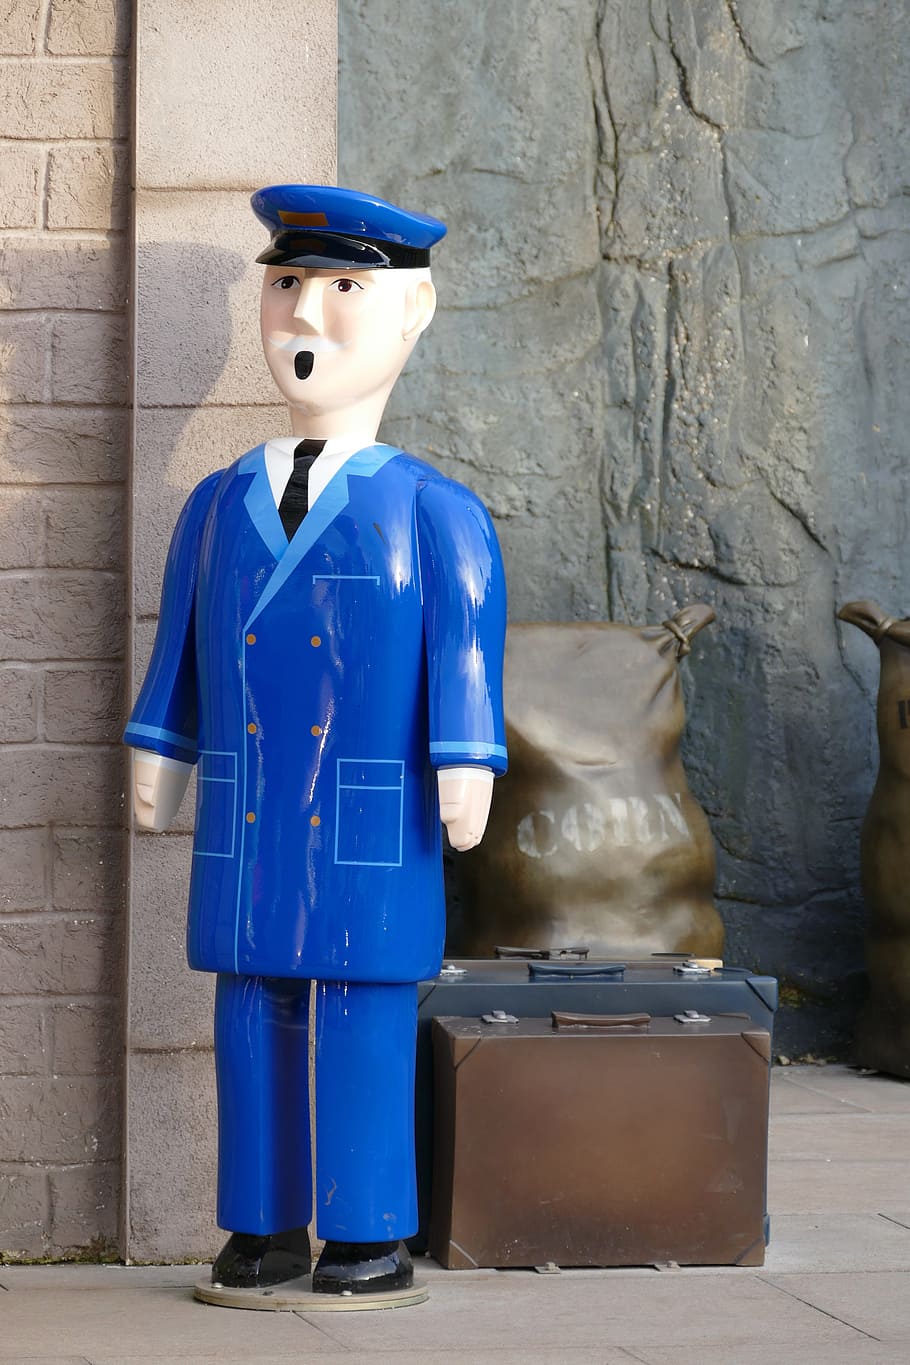 man, train, guard, person, rail, conductor, statue, plastic, luggage, station